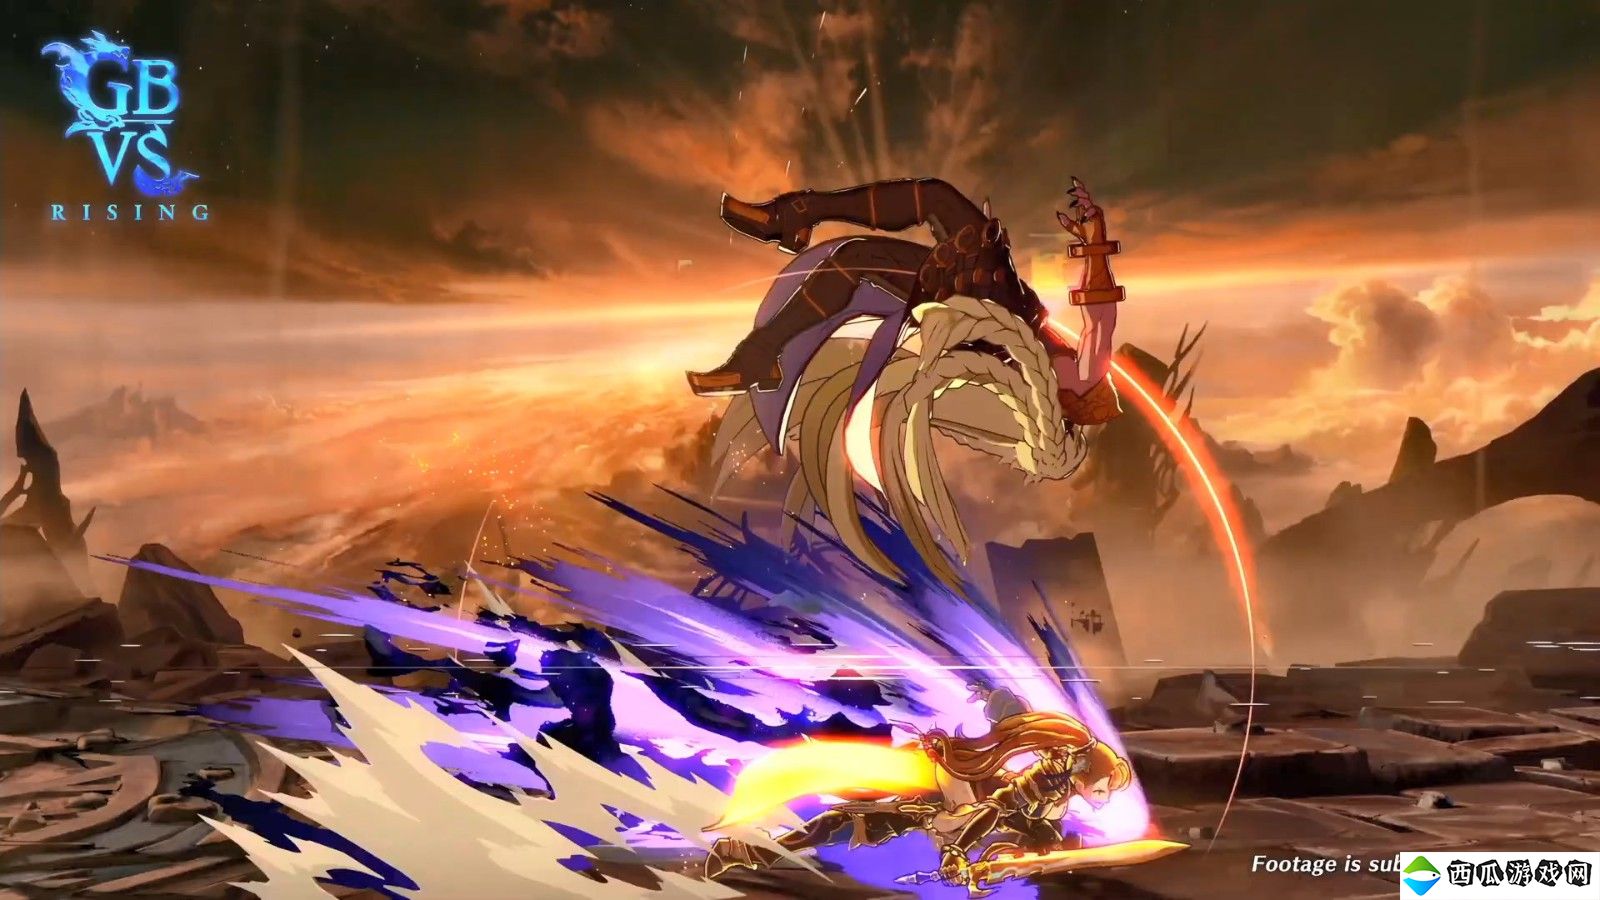 《碧蓝幻想Versus：Rising》新DLC角色“贝雅特丽丝”预告 5月23日上线